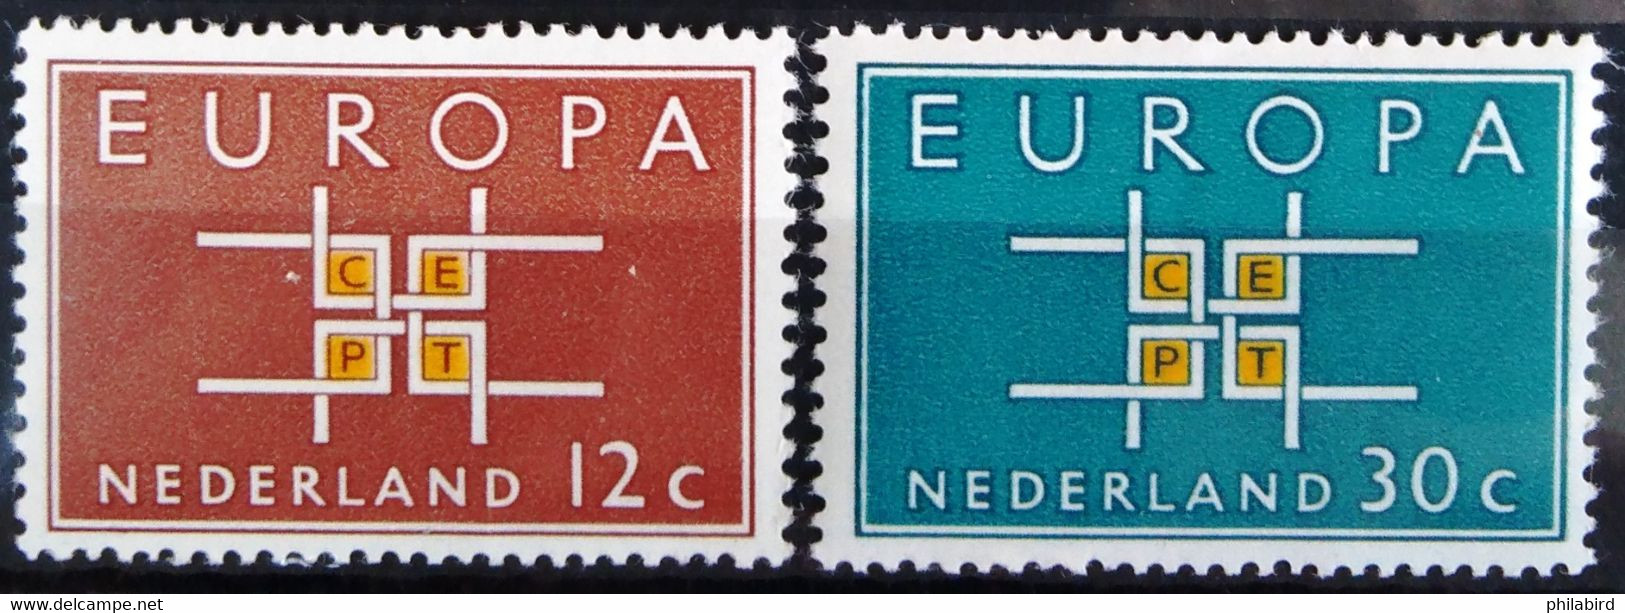 EUROPA 1963 - PAYS-BAS                 N° 780/781                        NEUF* - 1963